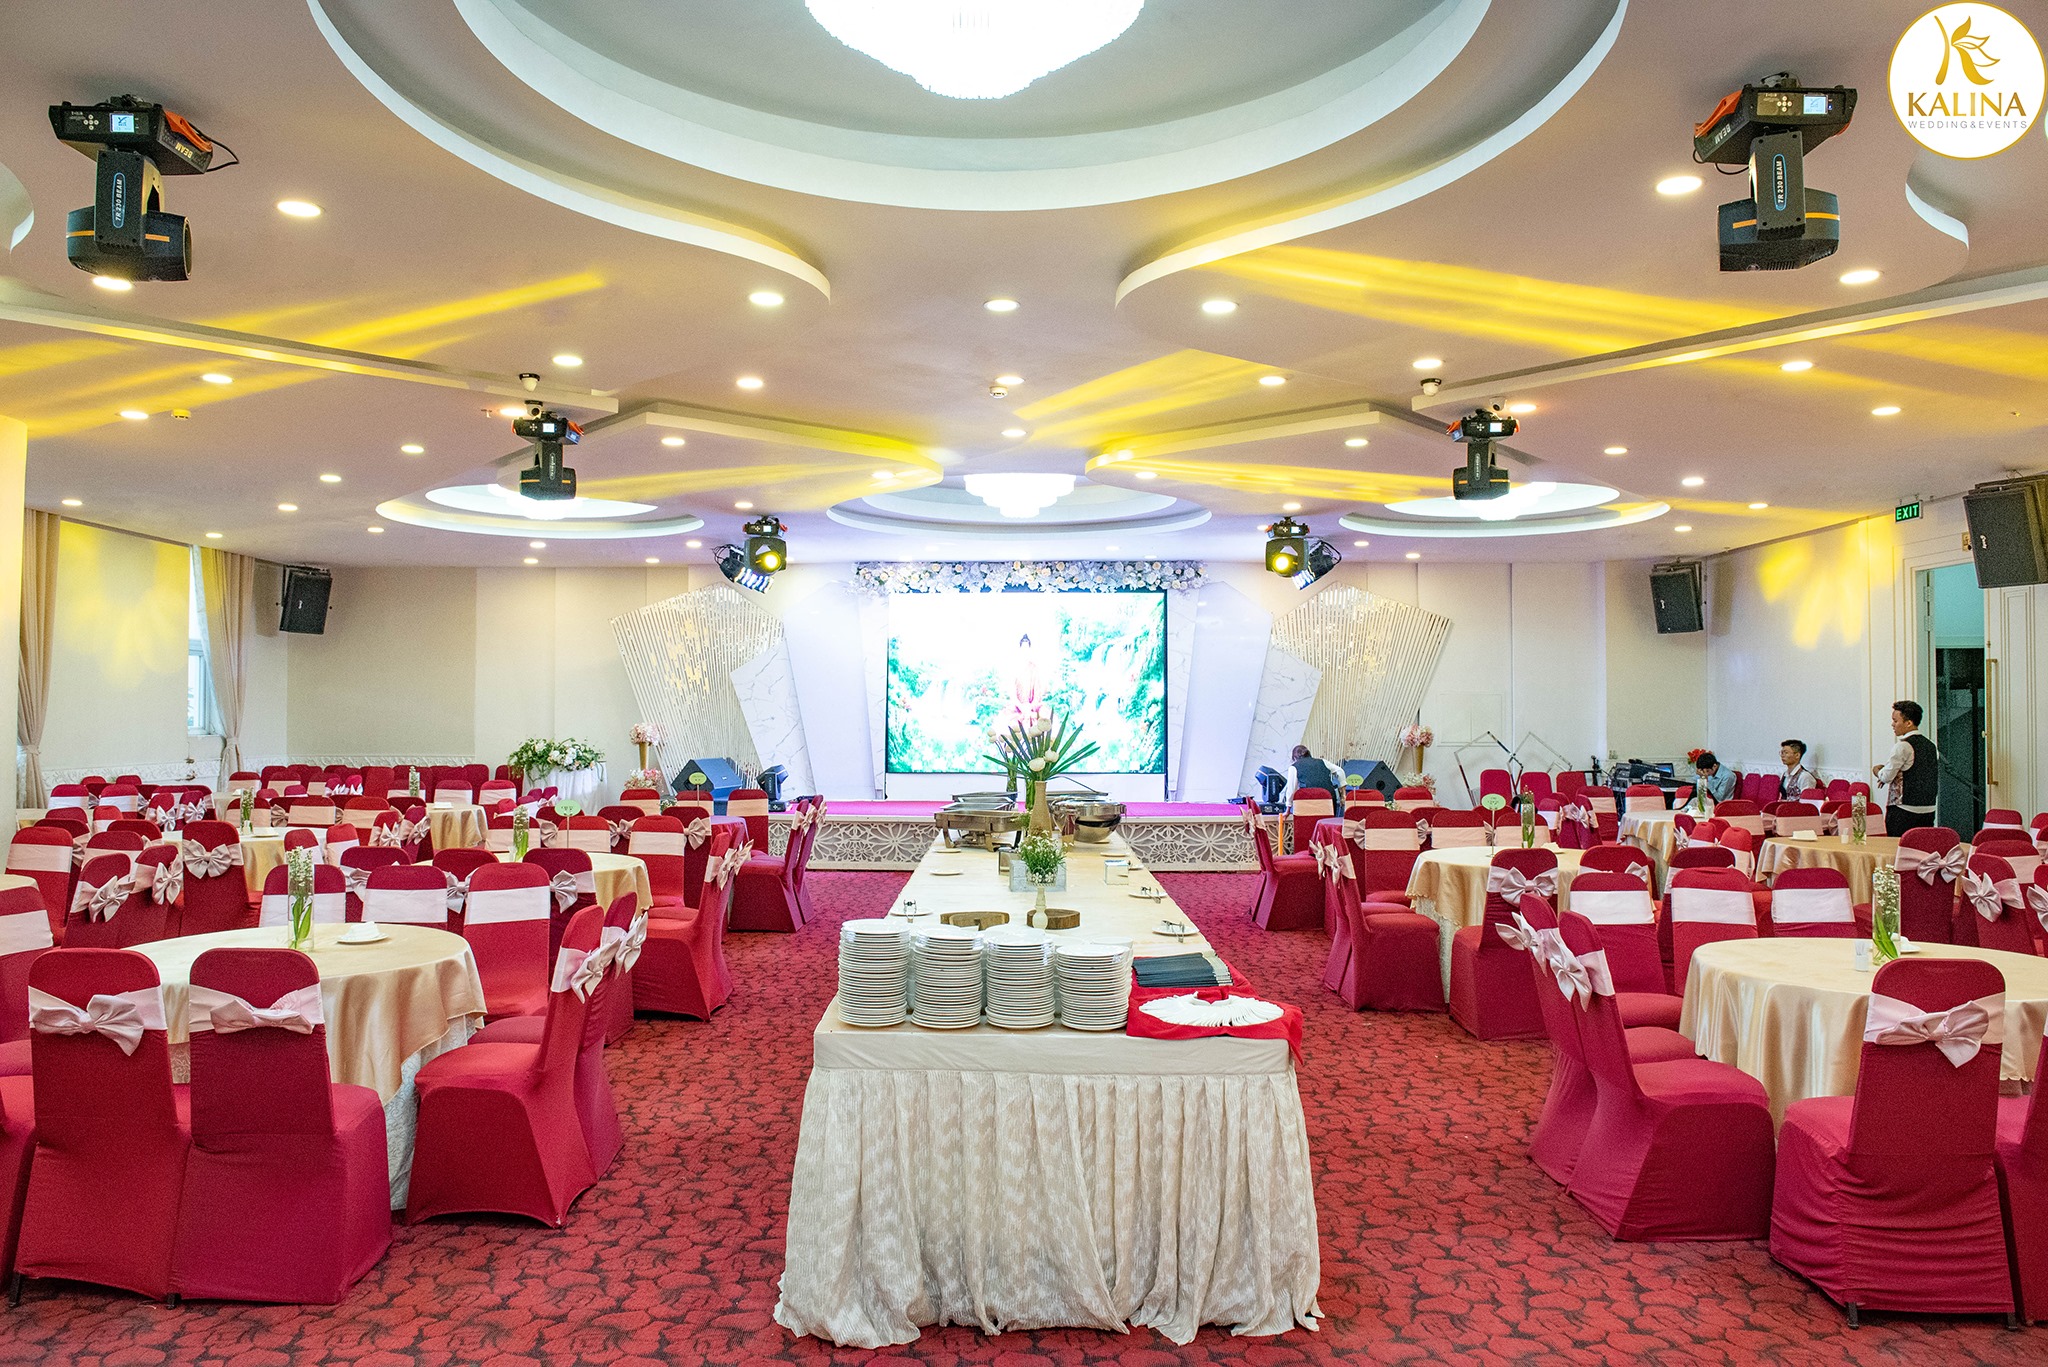 sảnh tiệc cưới nhà hàng Kalina quận Tân Phú